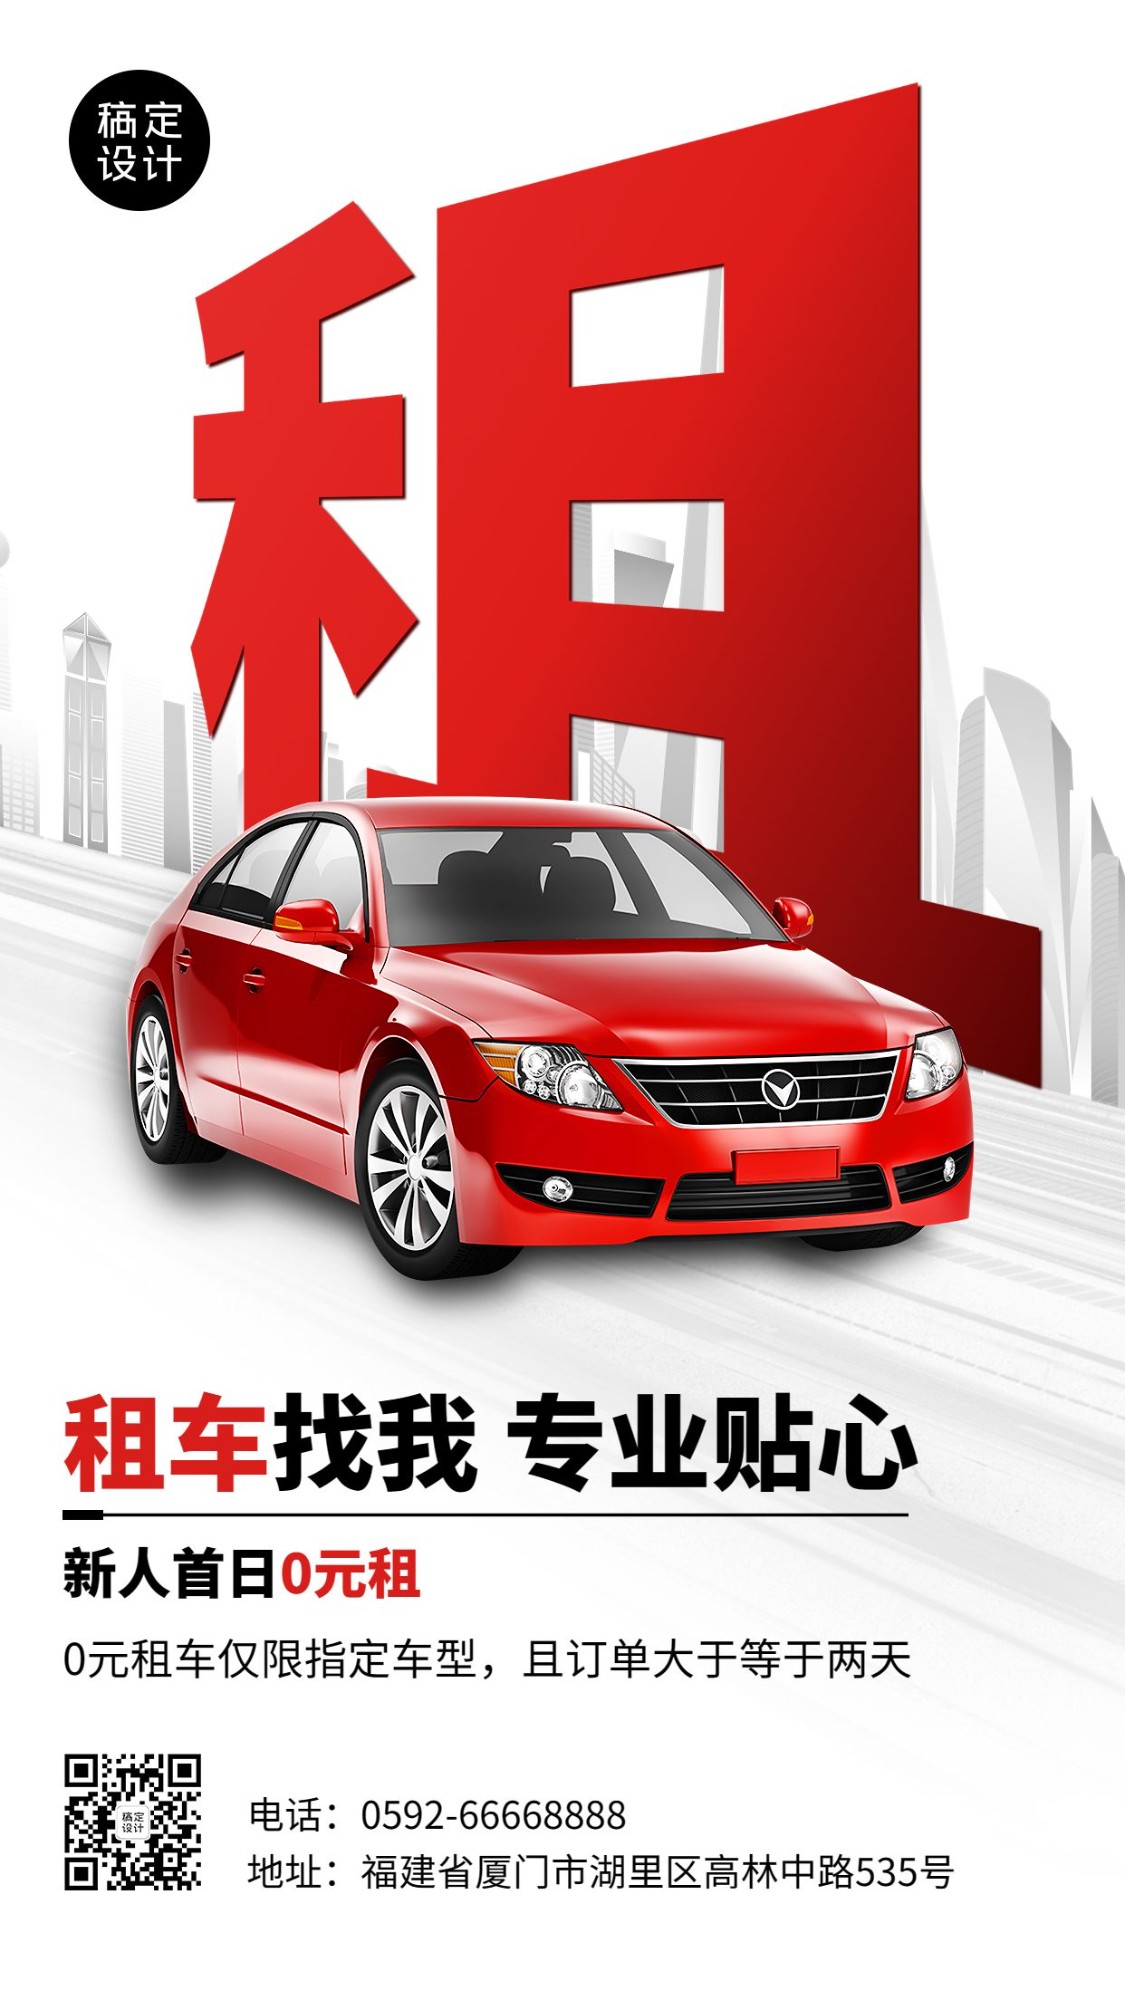 企业租车服务促销活动手机海报